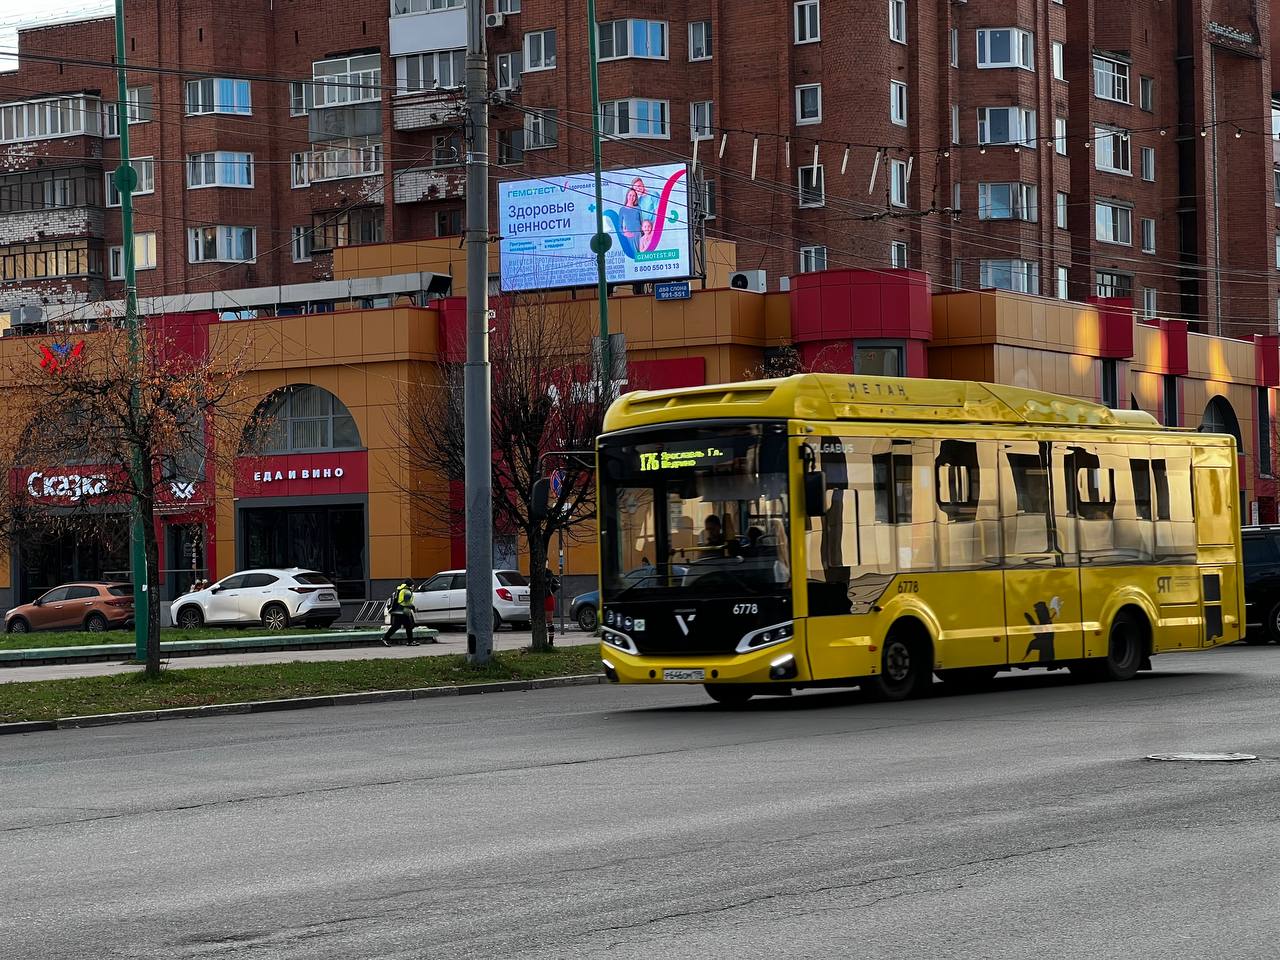 Автобусы в Ярославле полностью заменят на новые в следующем году – Евраев